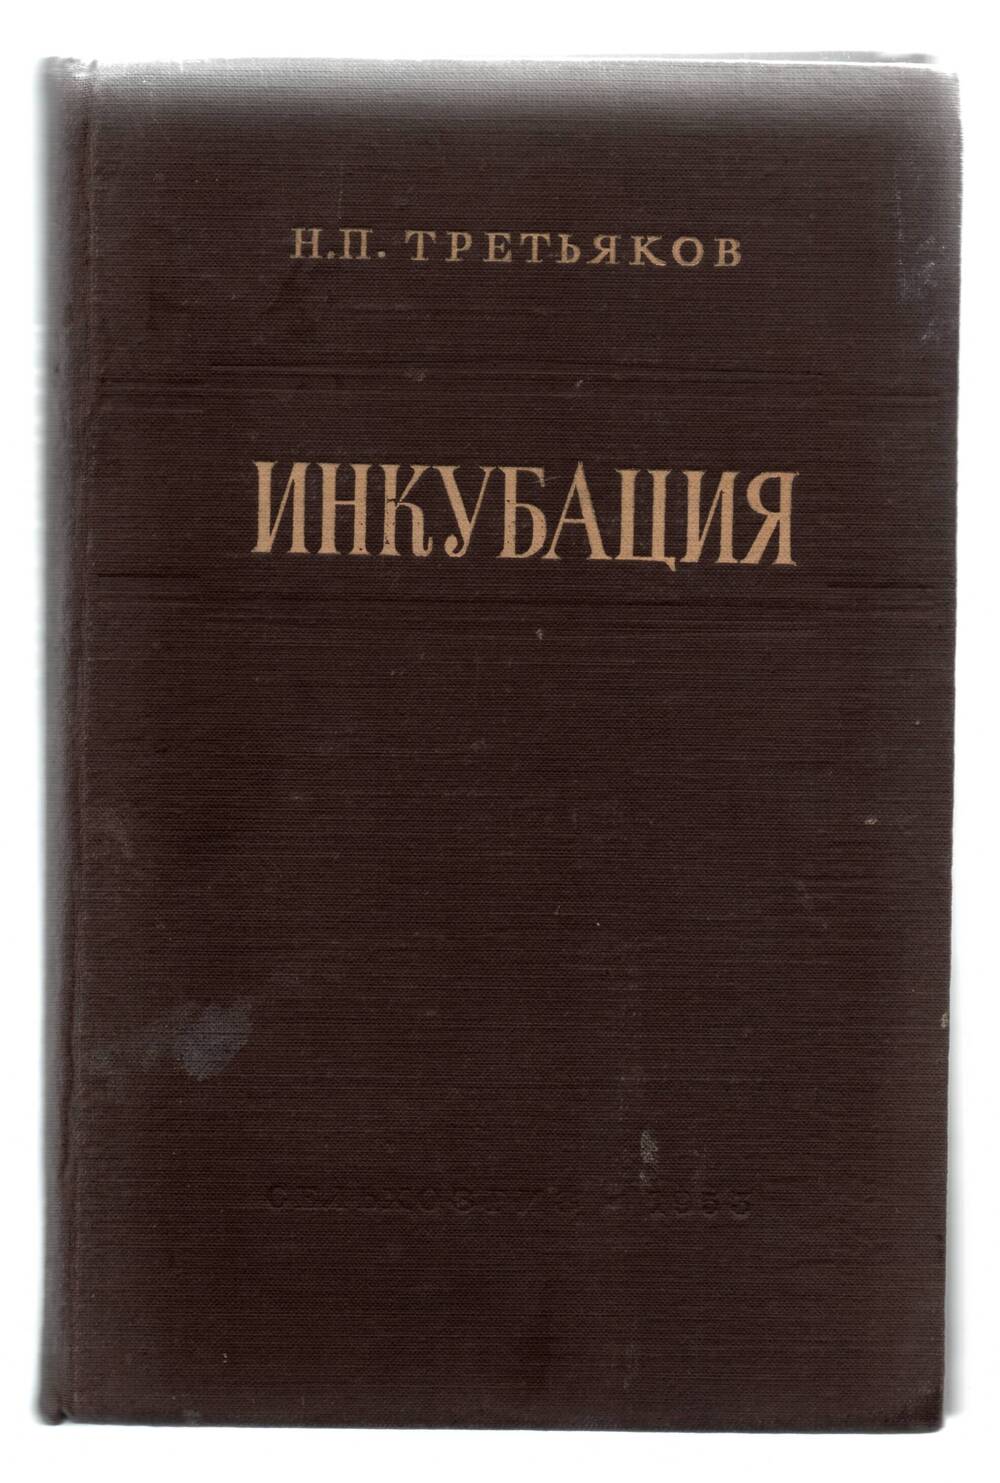 Книга Н.П. Третьяков «Инкубация»  М. 1953г.